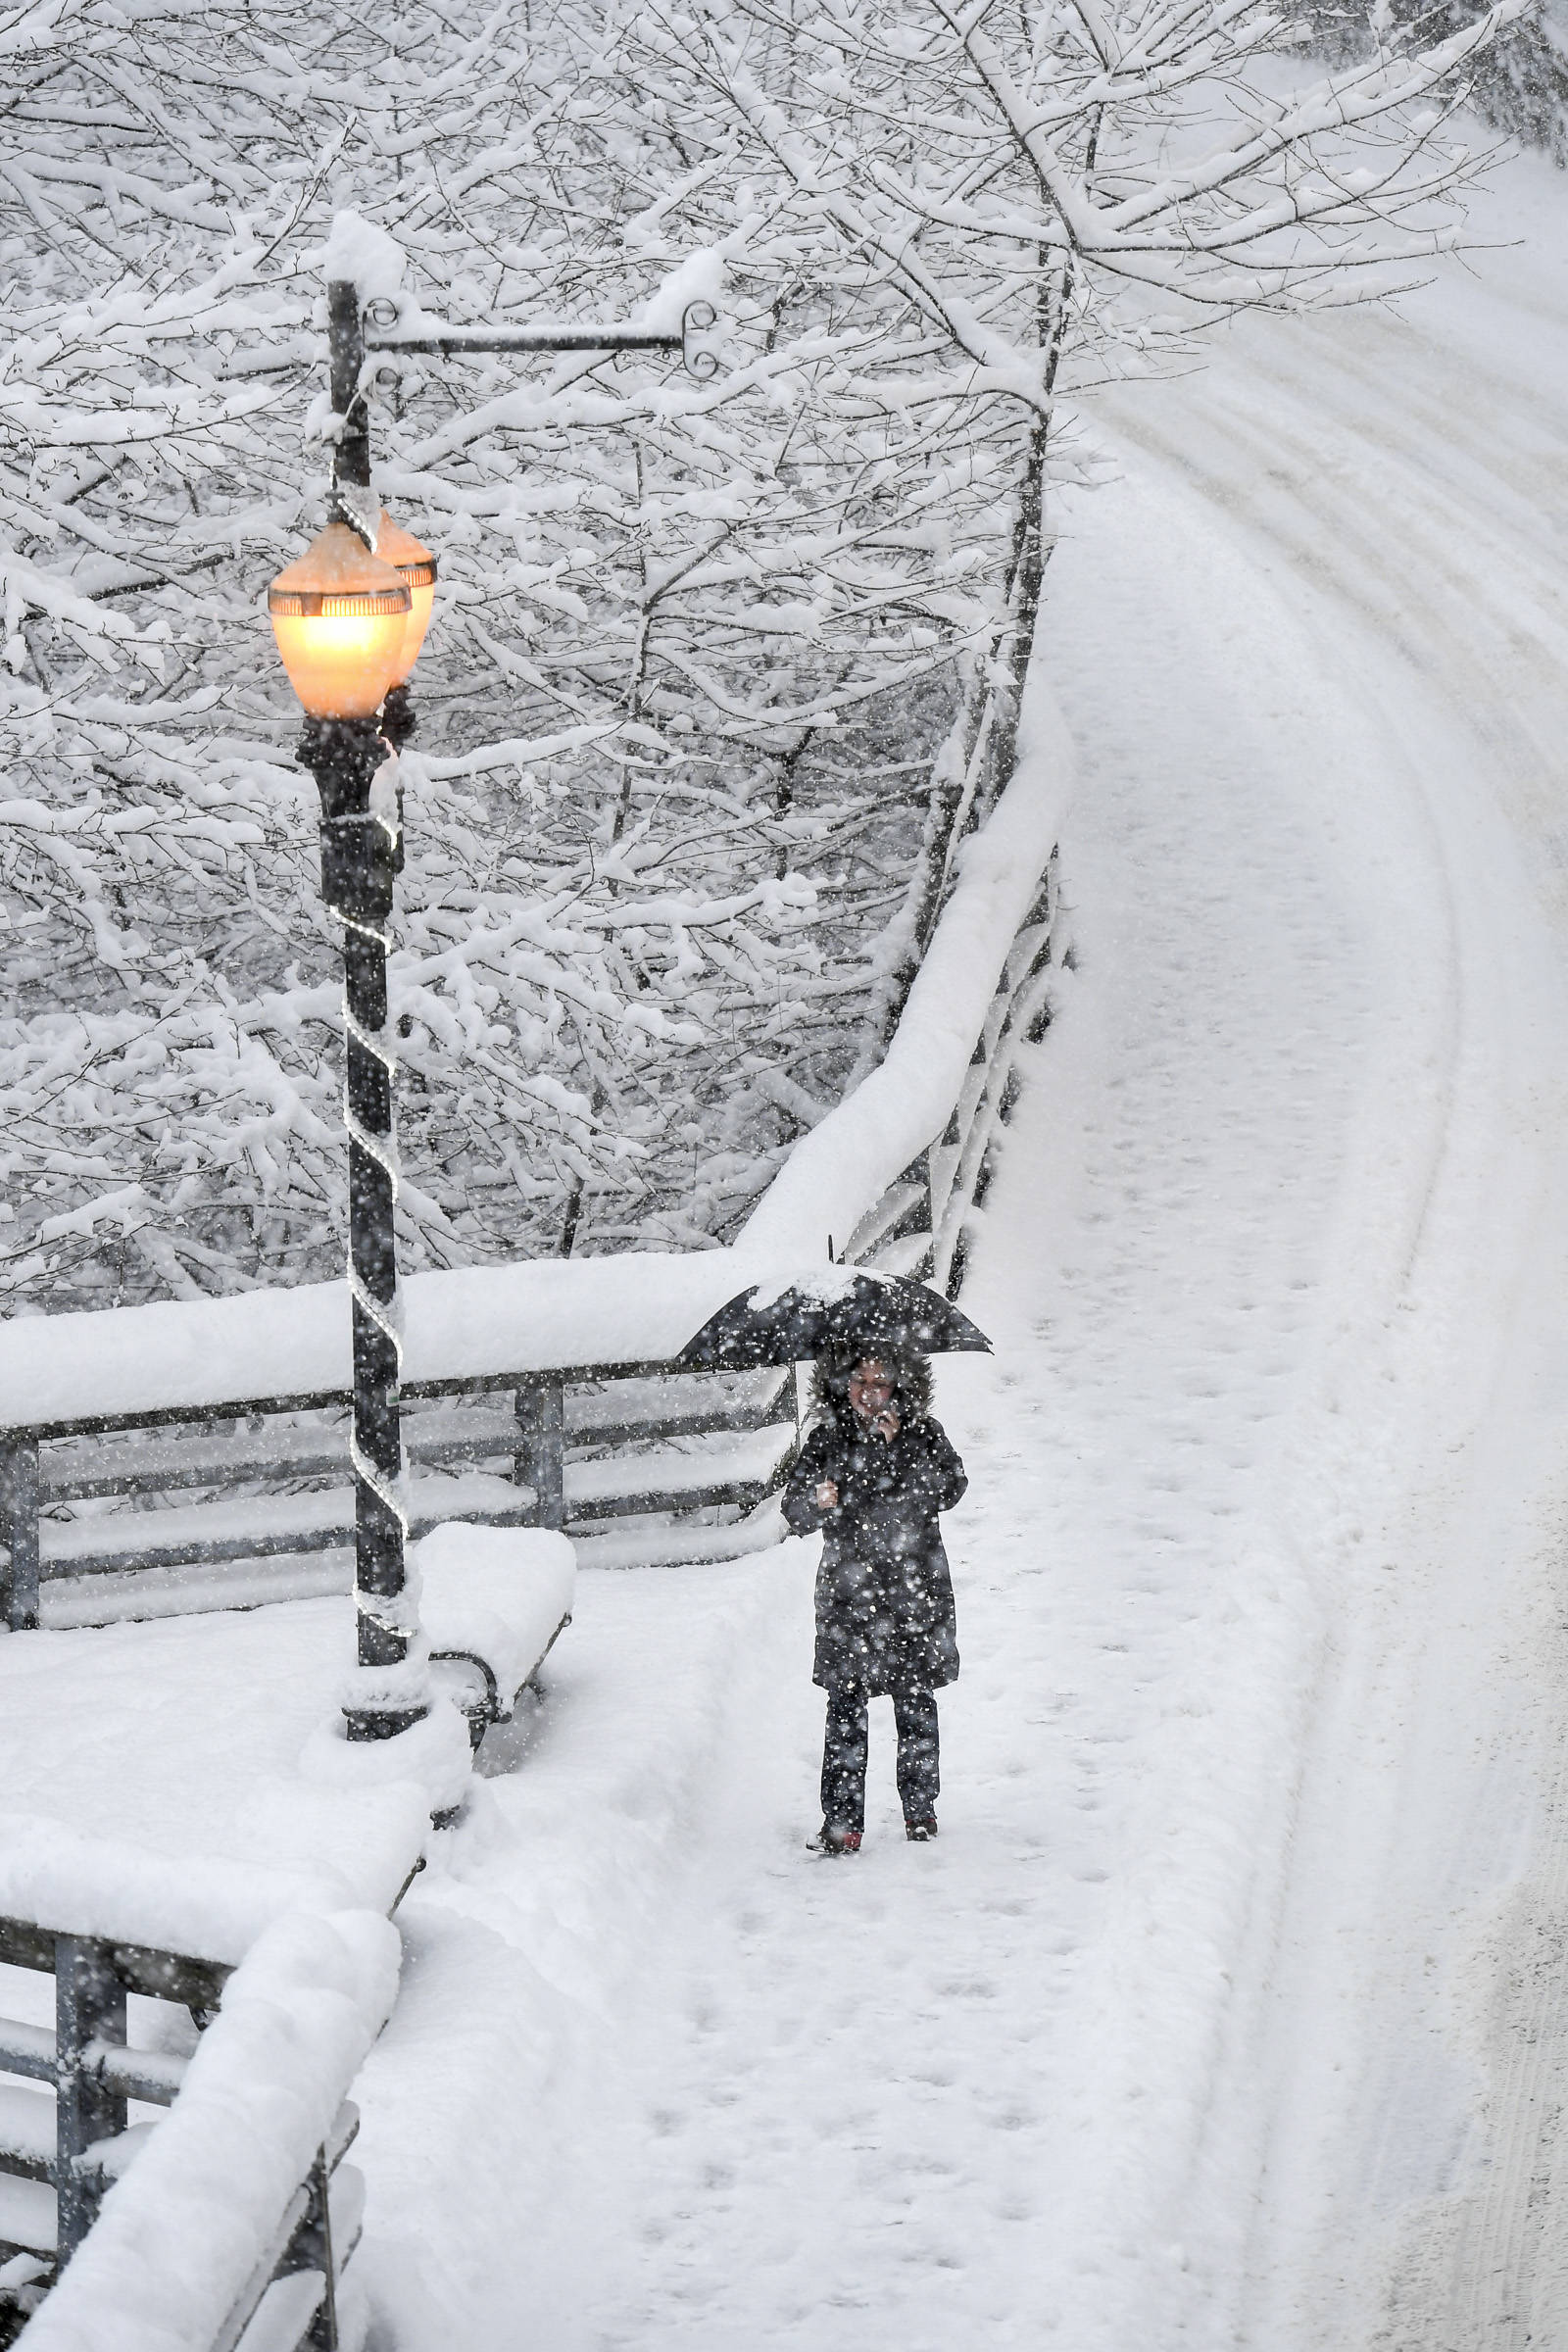 Marylene Wales walks through the snow along Calhoun Avenue on Tuesday, Jan. 7, 2020. (Michael Penn | Juneau Empire)